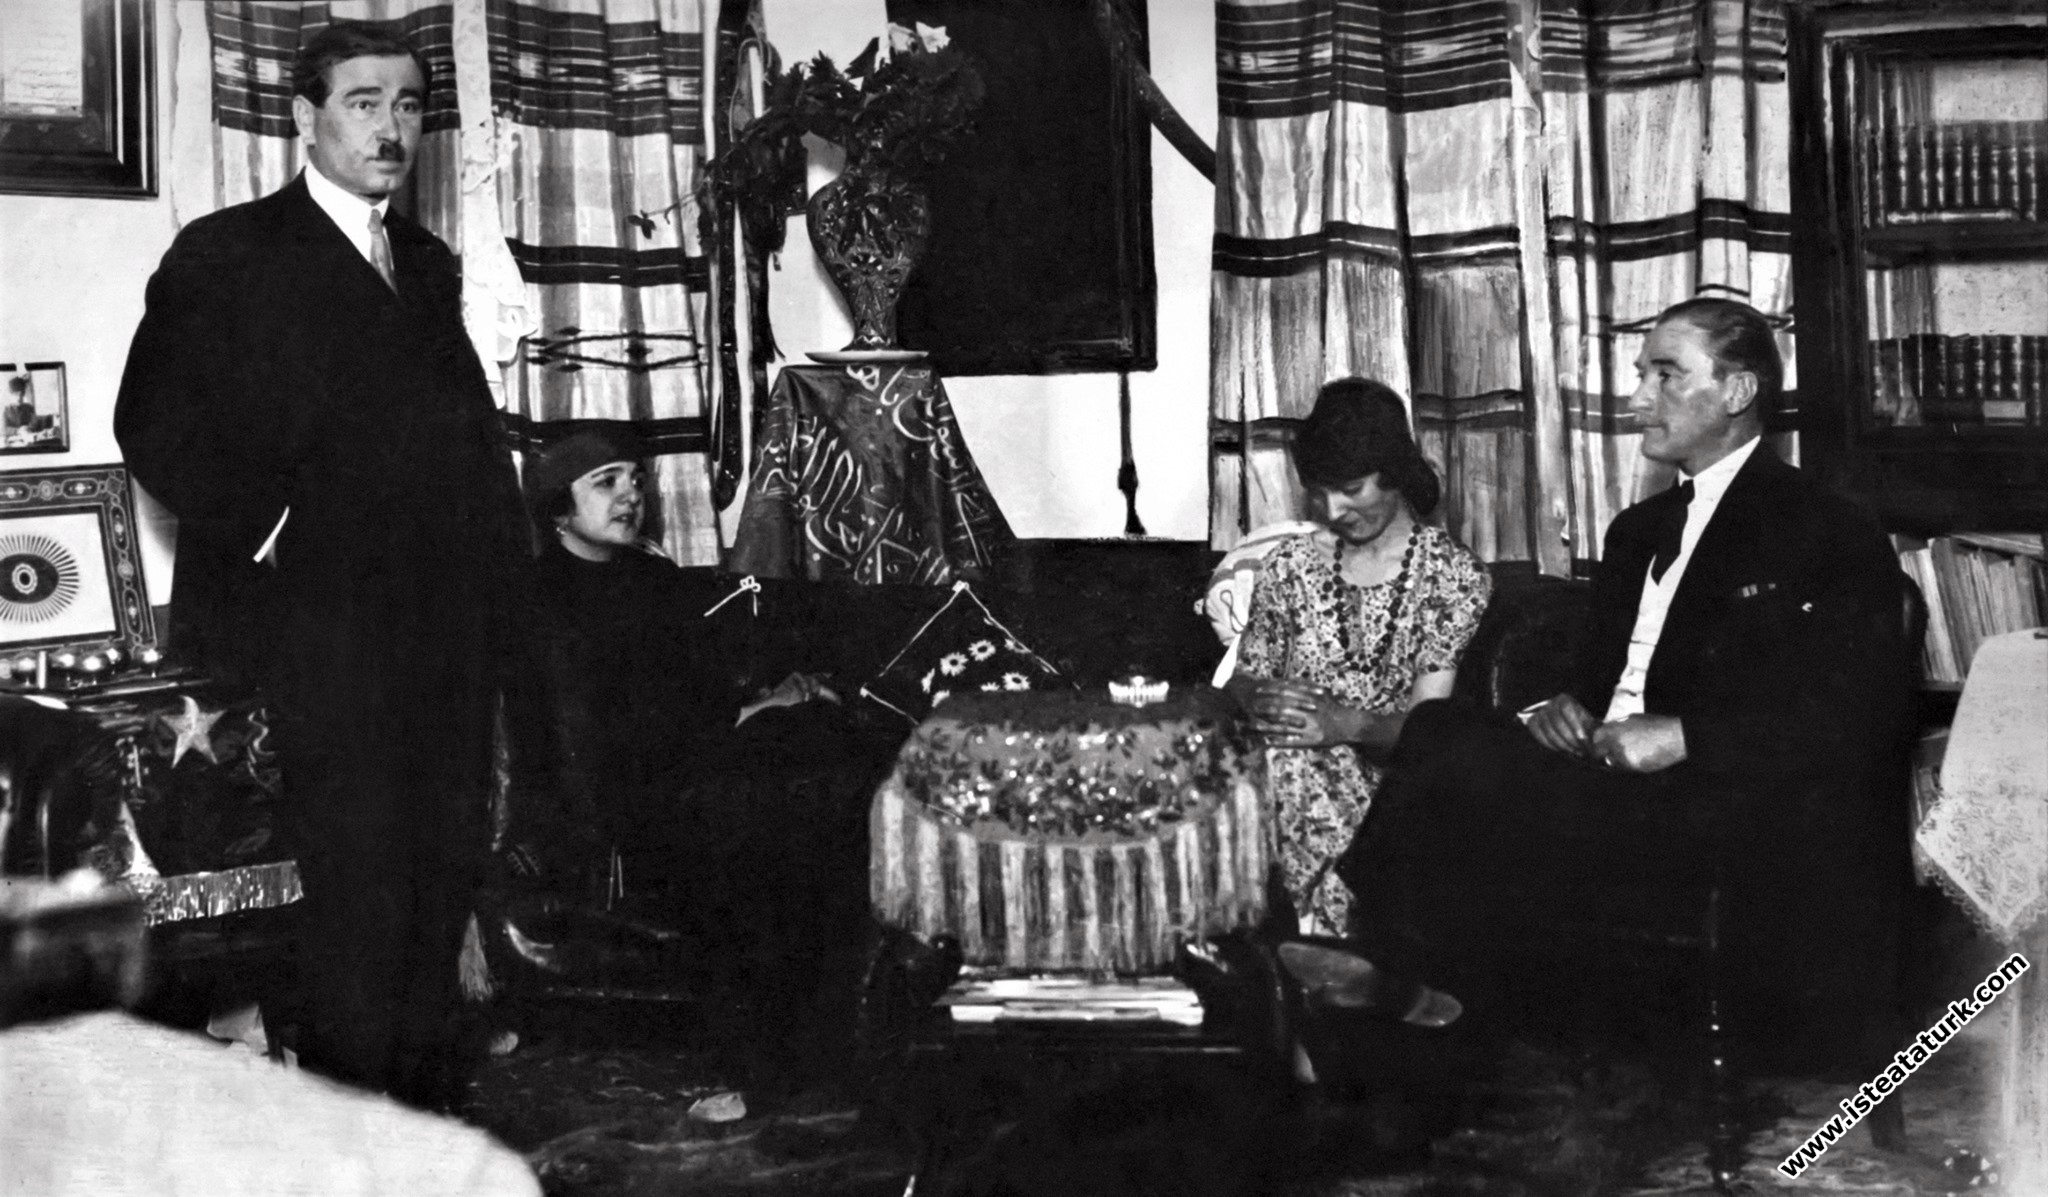 Çankaya Köşkü'nde Atatürk'ün eşi Latife Hanım, Ali Fethi Bey'in eşi Galibe Hanım bulunmaktadır. (04.03.1923)